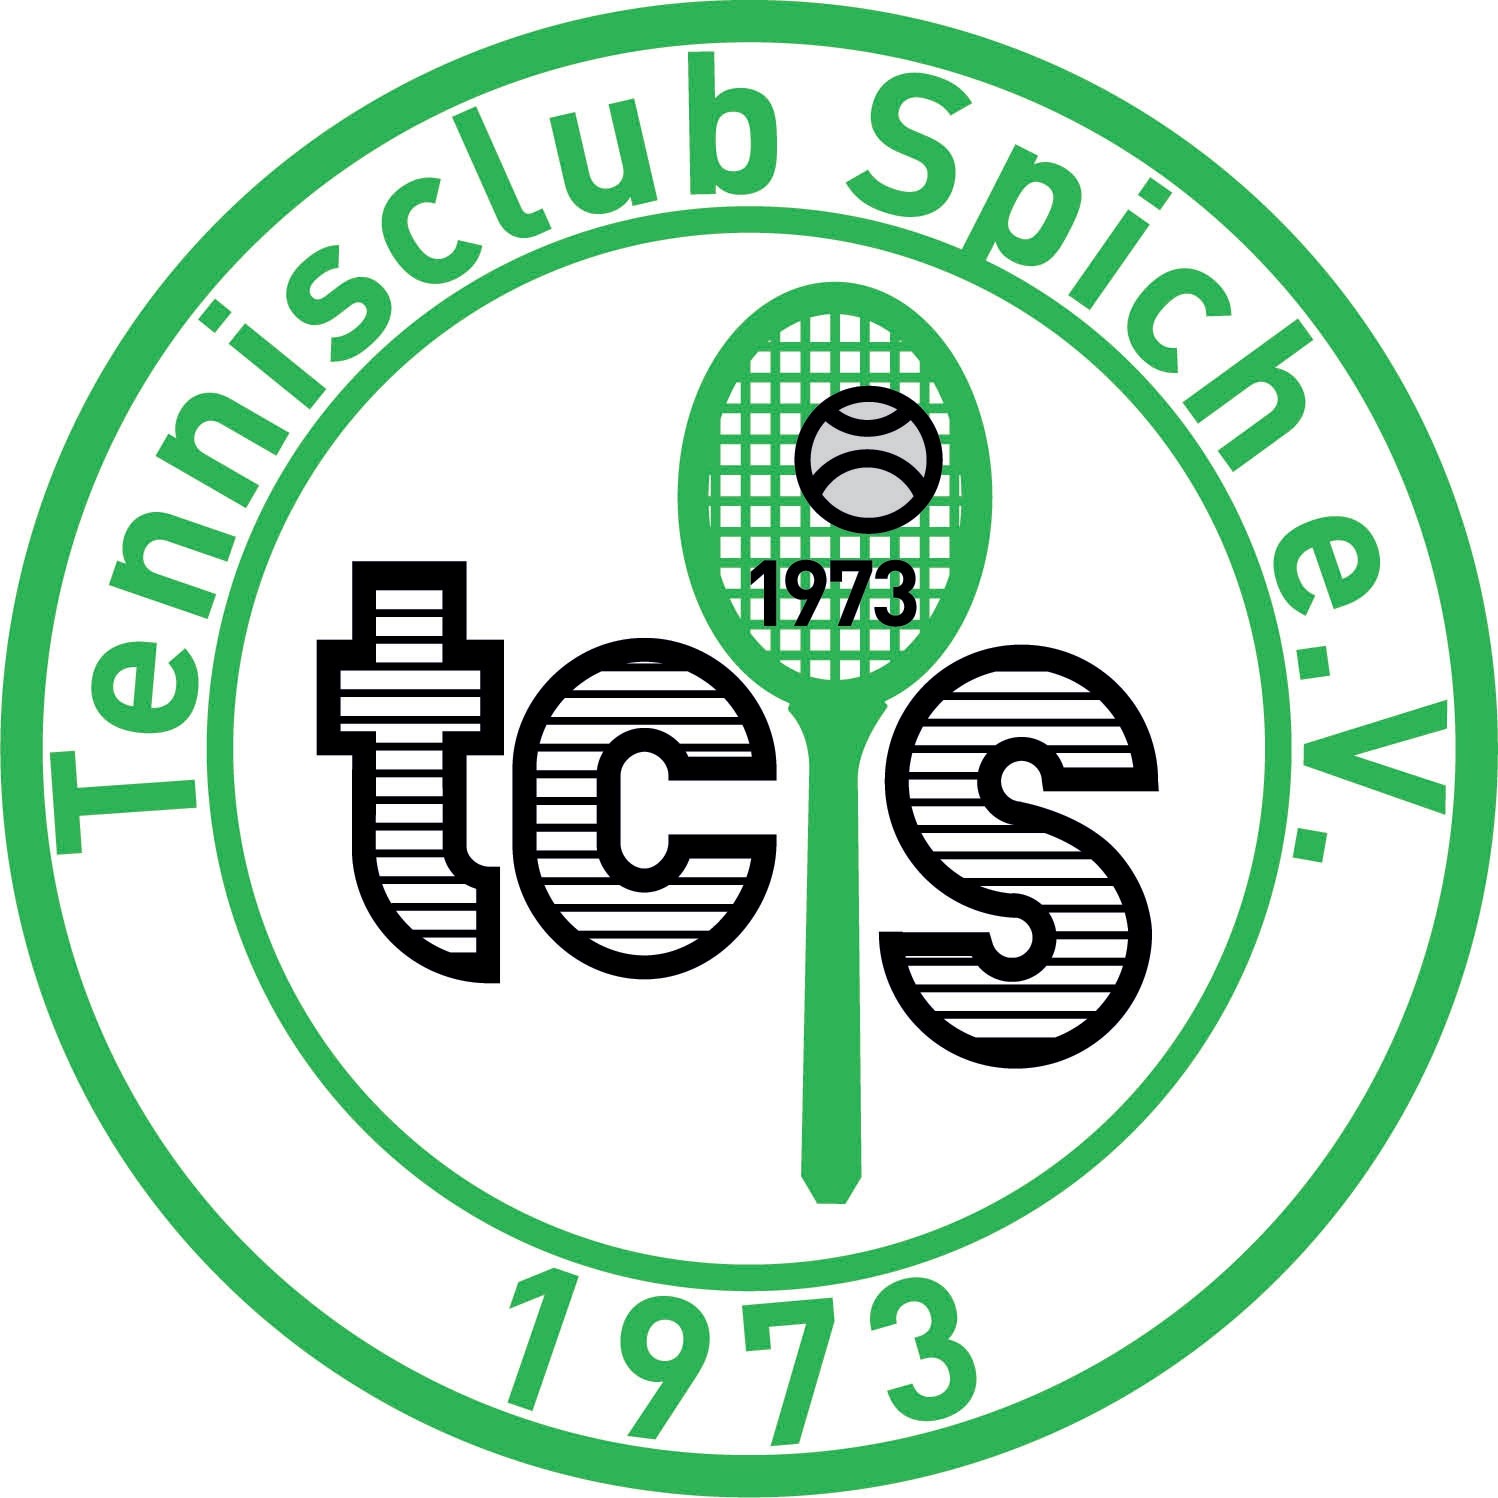 Tennisclub Spich 1973 e.V.